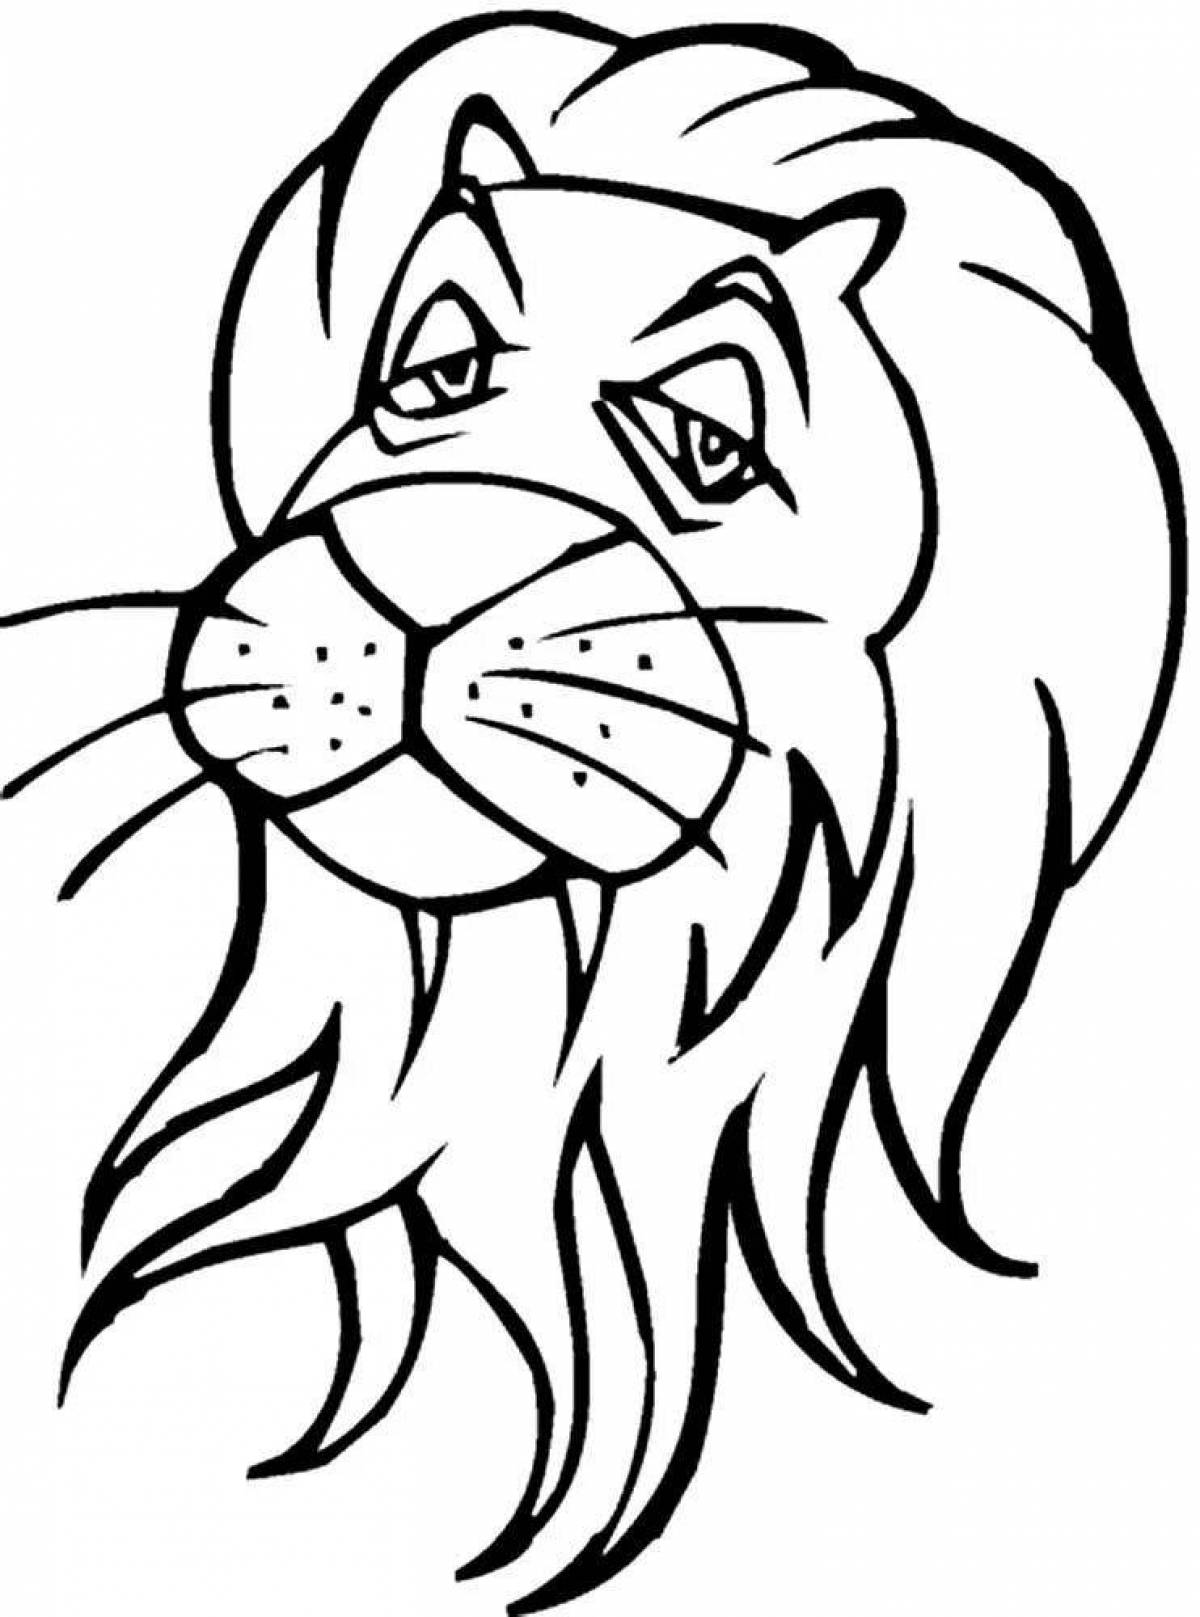 Ярко окрашенная страница раскраски головы льва